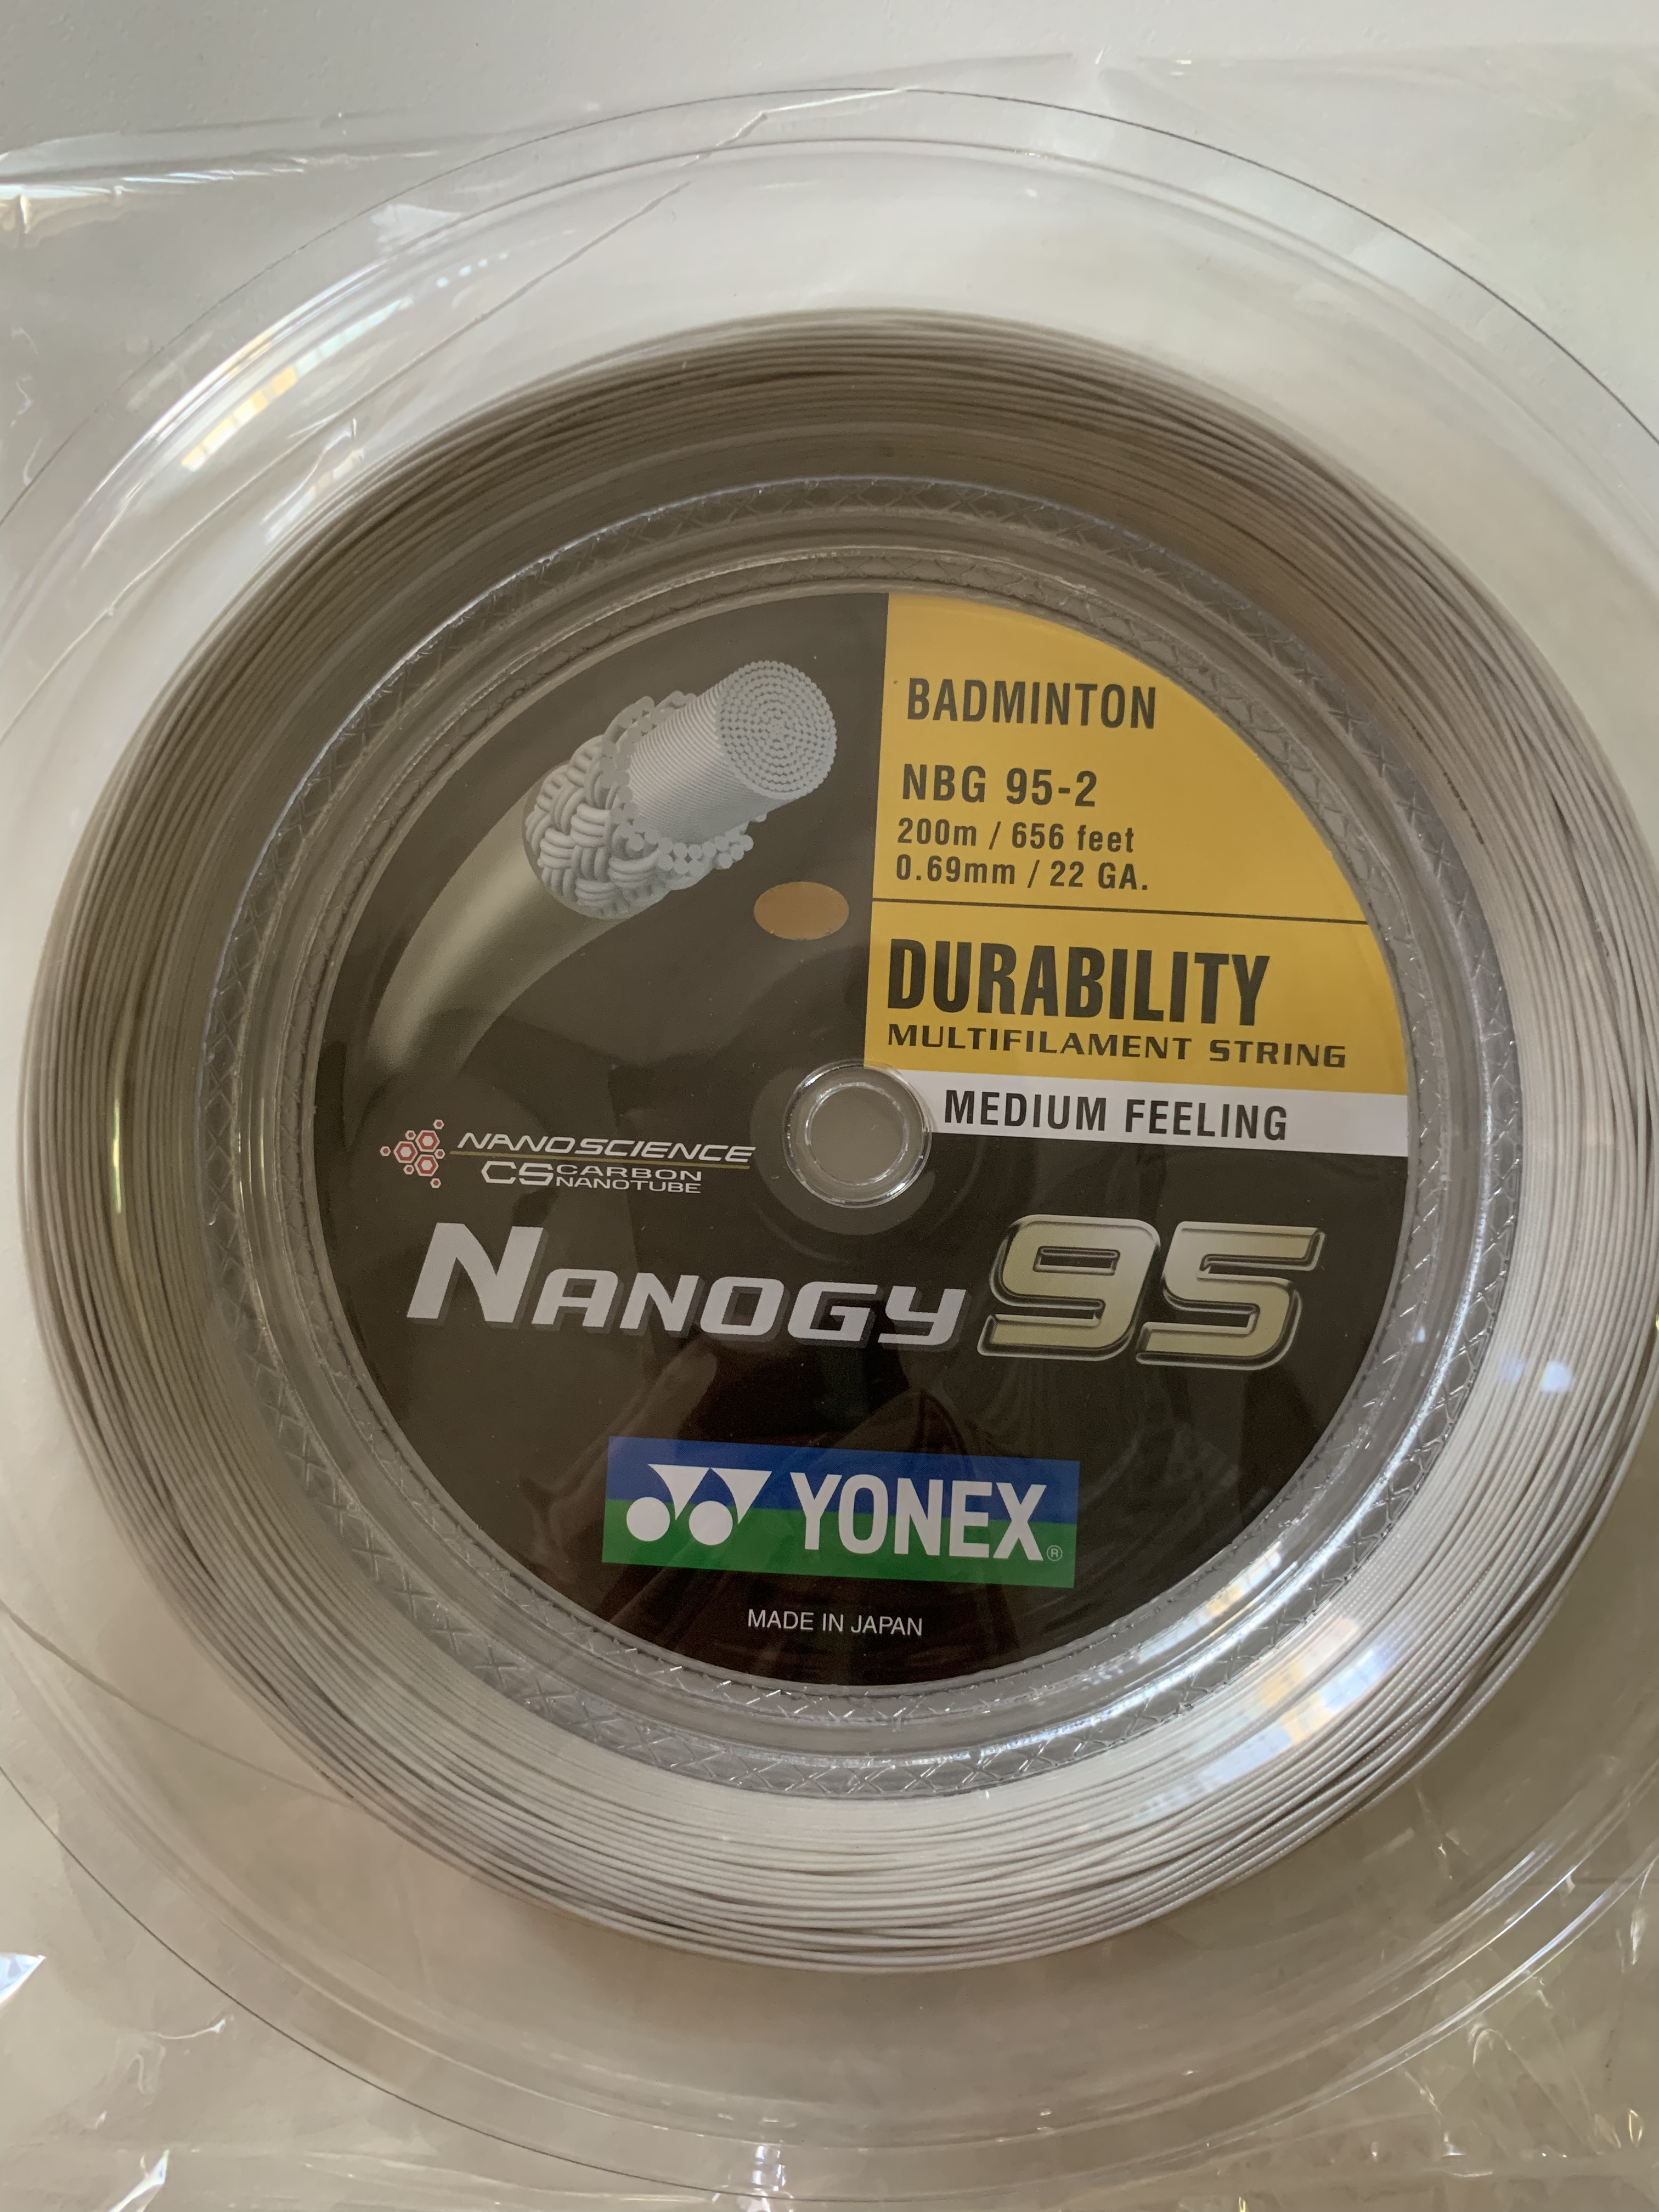 YONEX Nanogy 95 NBG95 Badminton Coil String 200m NBG95-2 Silver Gray